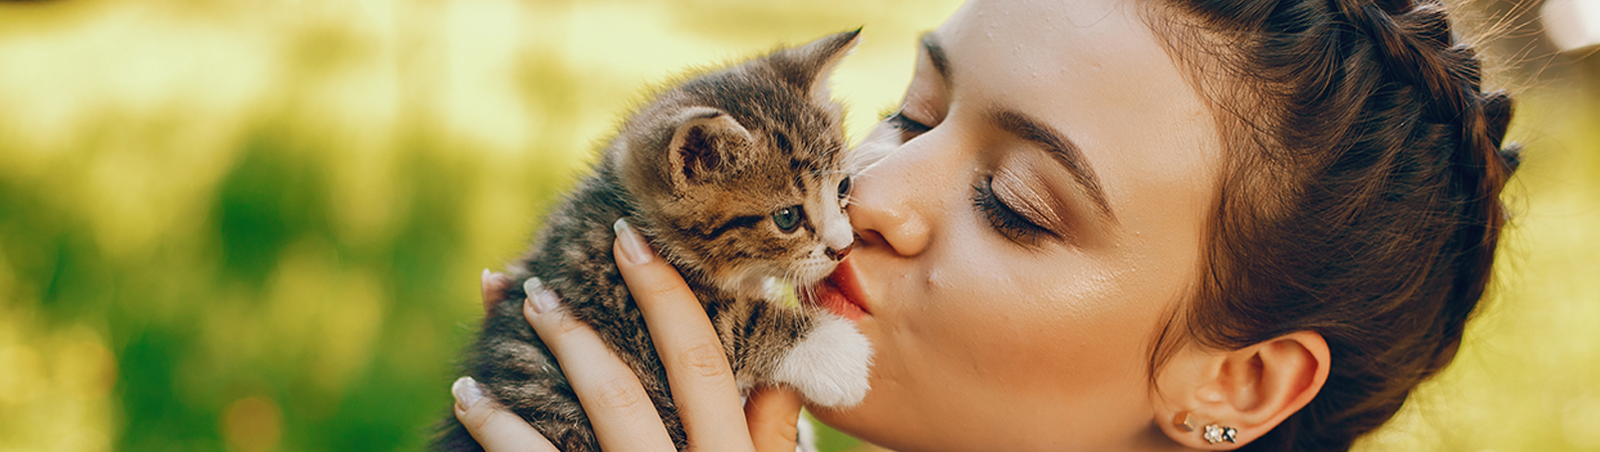 Eine Frau hebt ein kleines Kätzchen hoch und küsst es vorsichtig.